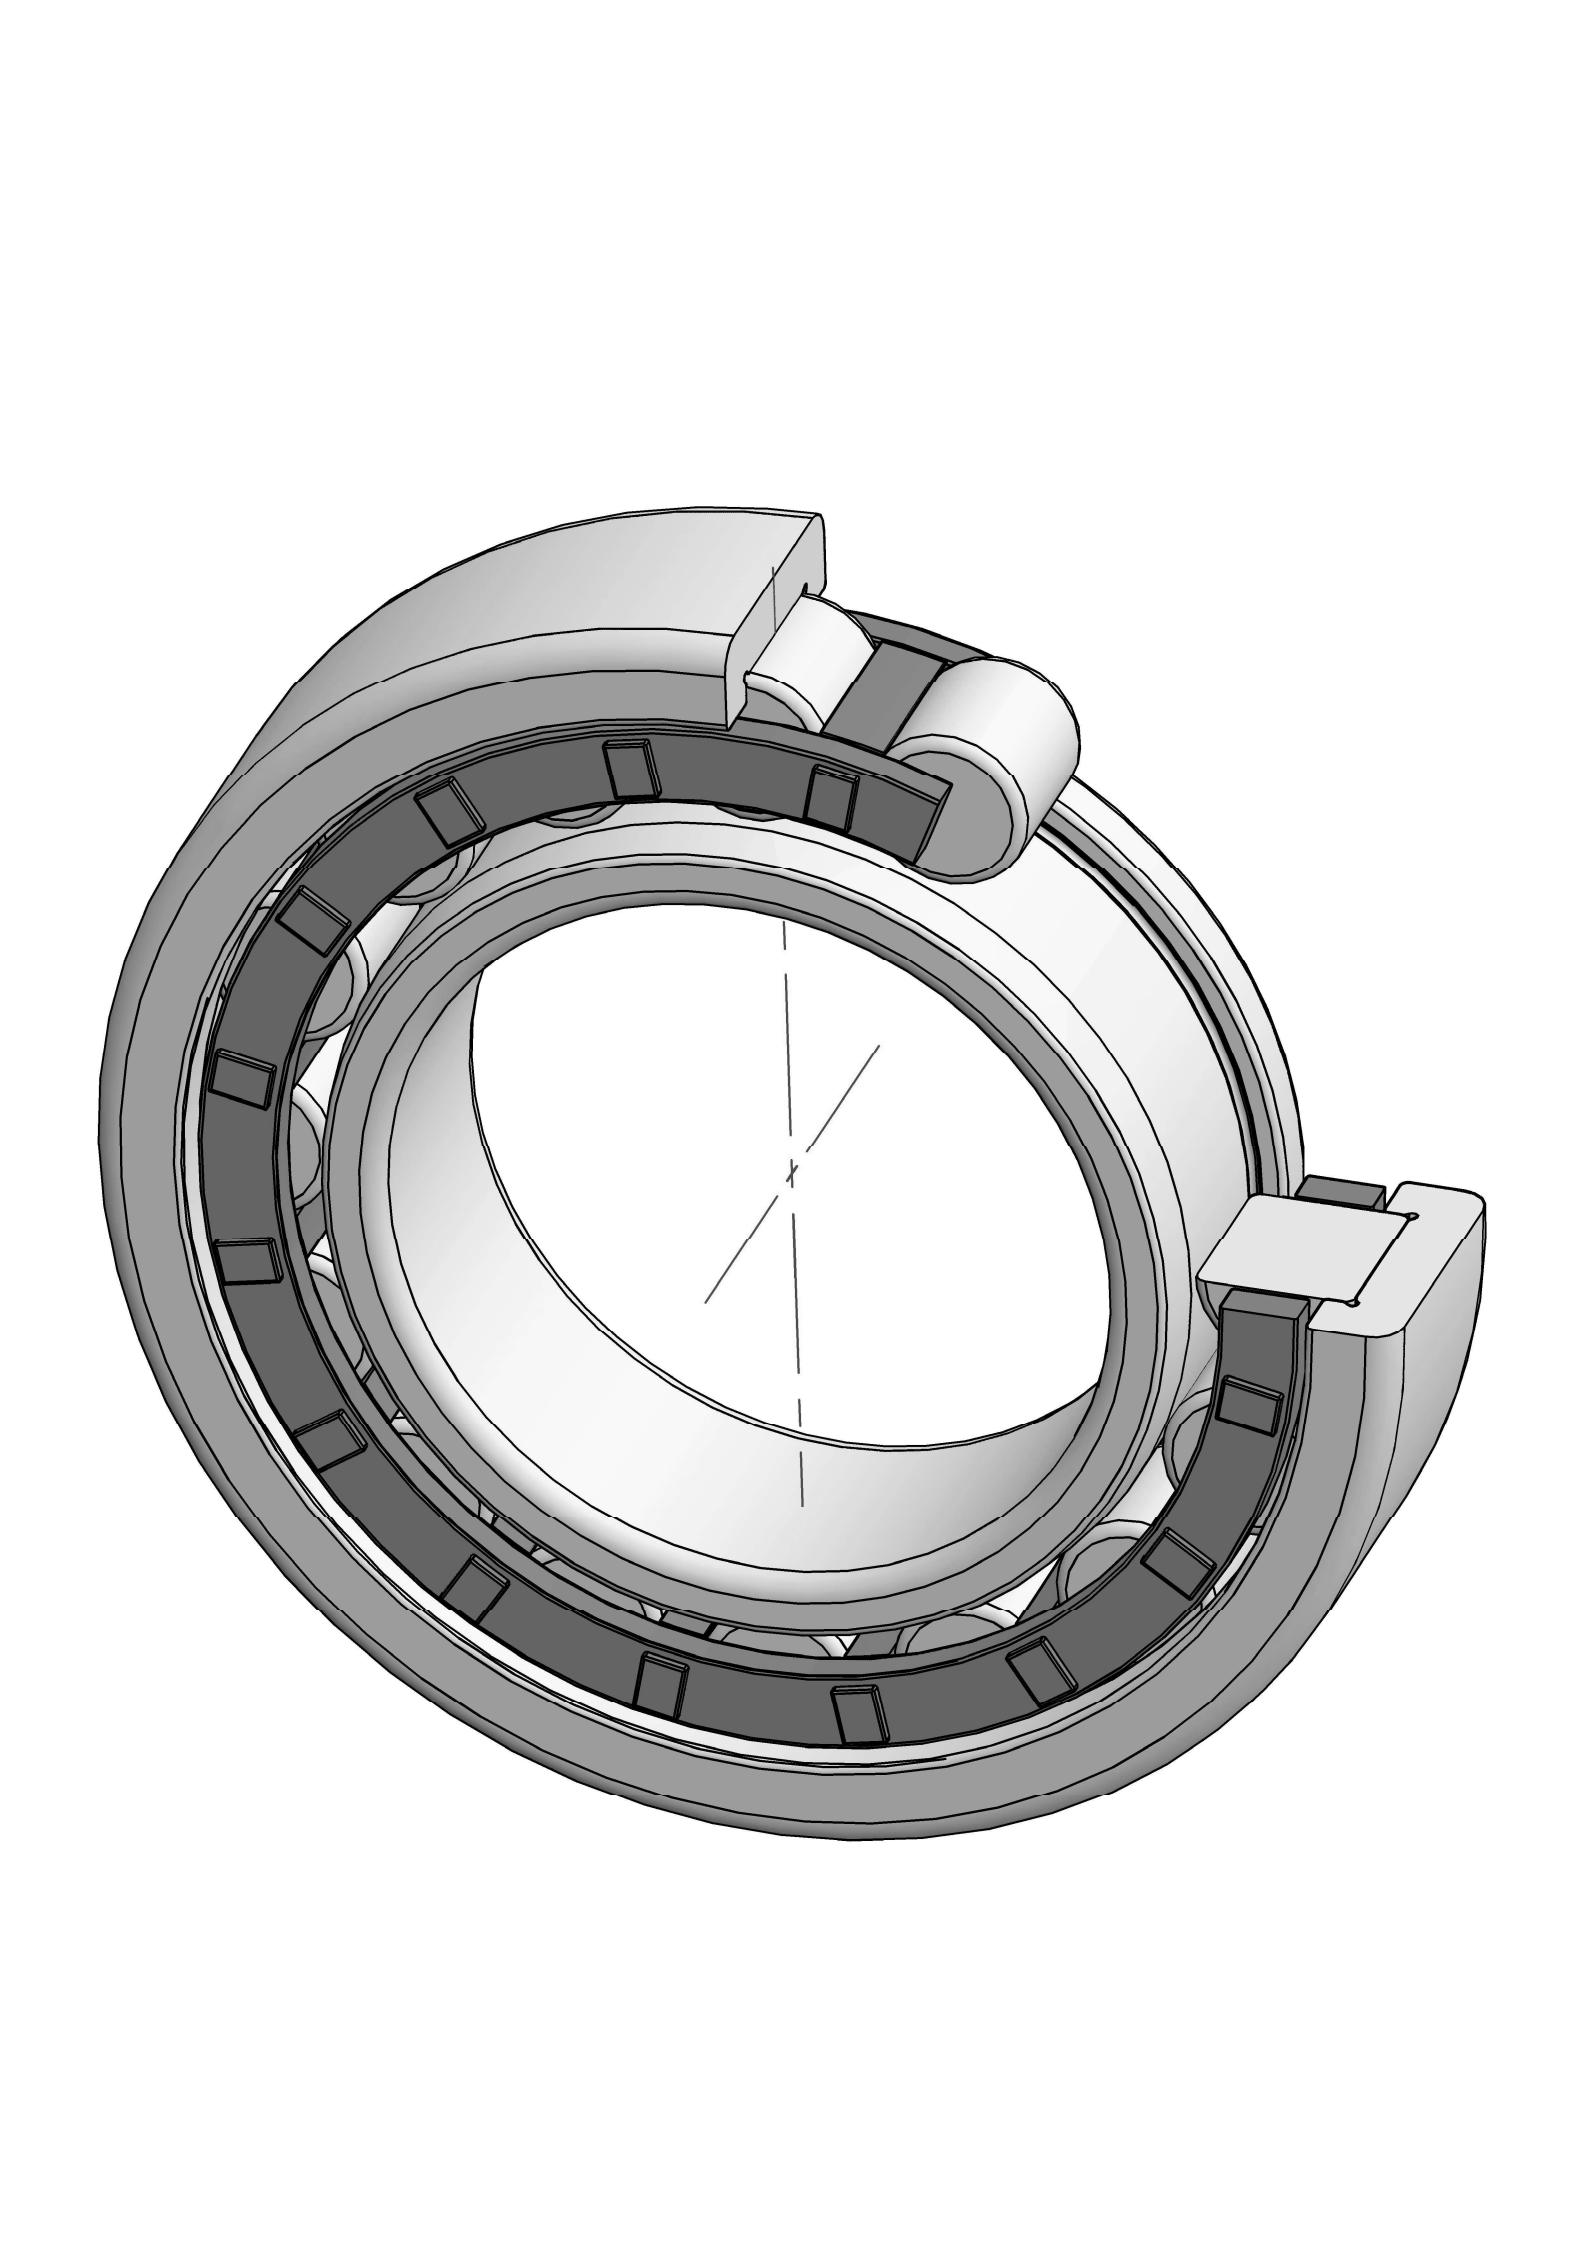 NJ222-EM otu ahịrị cylindrical roller bearing